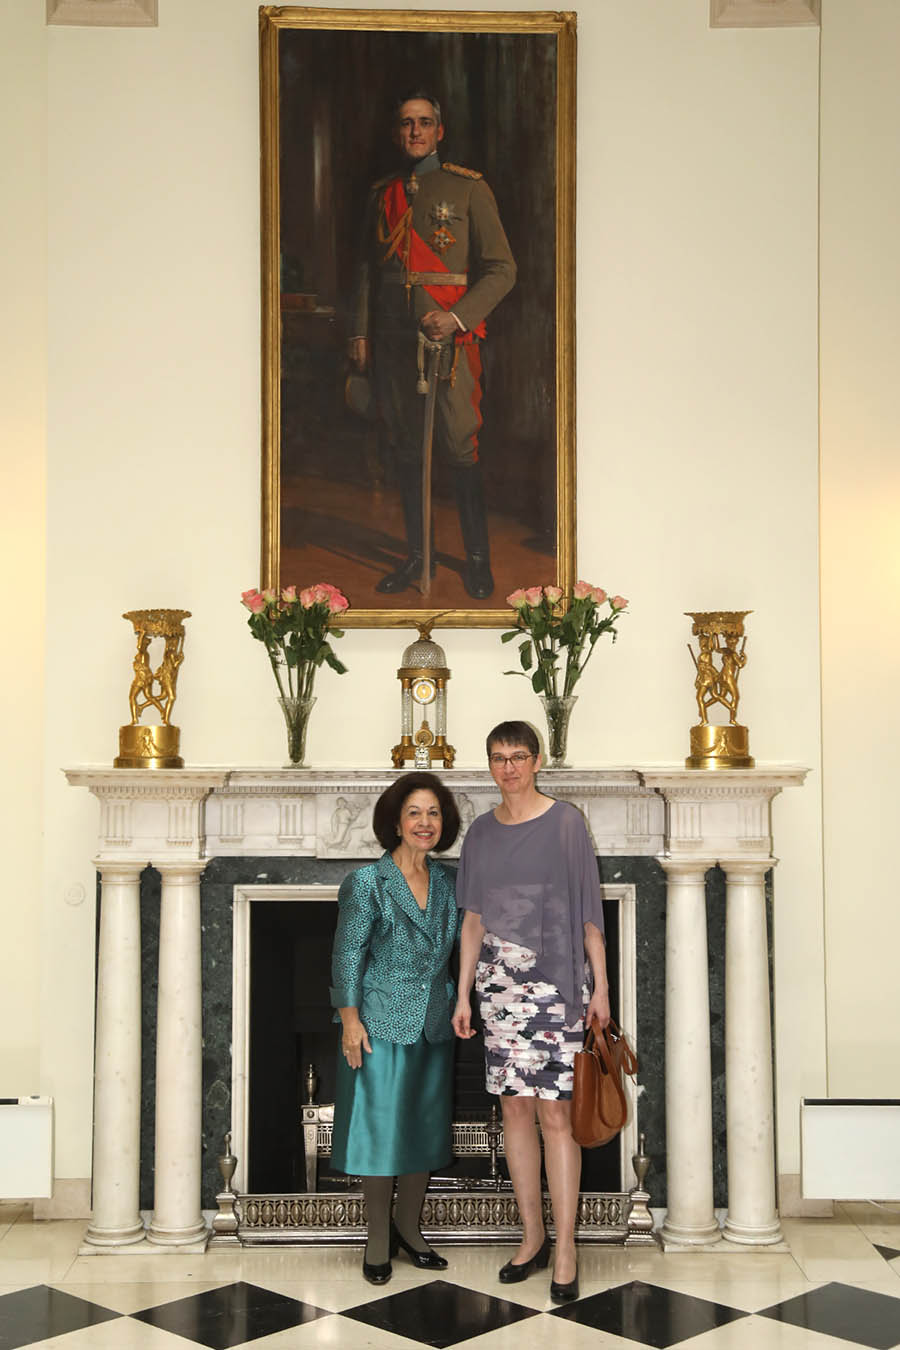 Nj.K.V. Princeza Katarina i Nj.E. gđa Anke Konrad, ambasadorka Nemačke